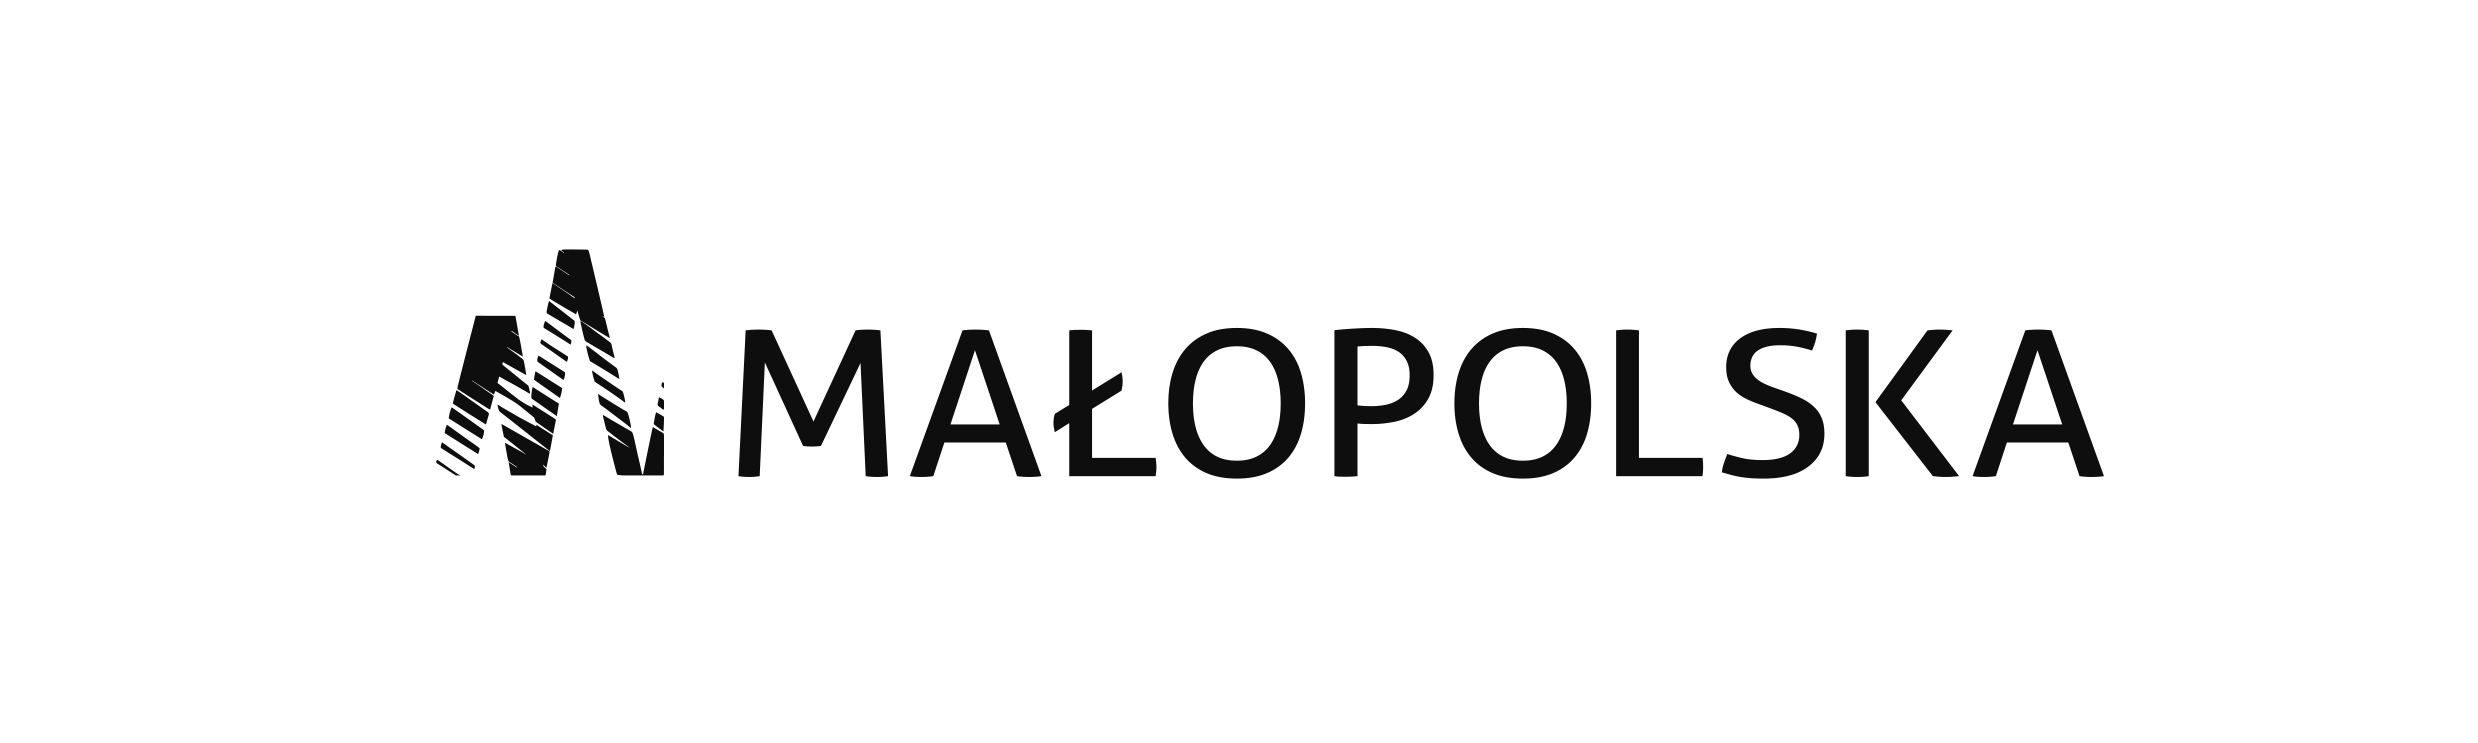 grafika: logo Urzędu Marszałkowskiego Województwa Małopolskiego